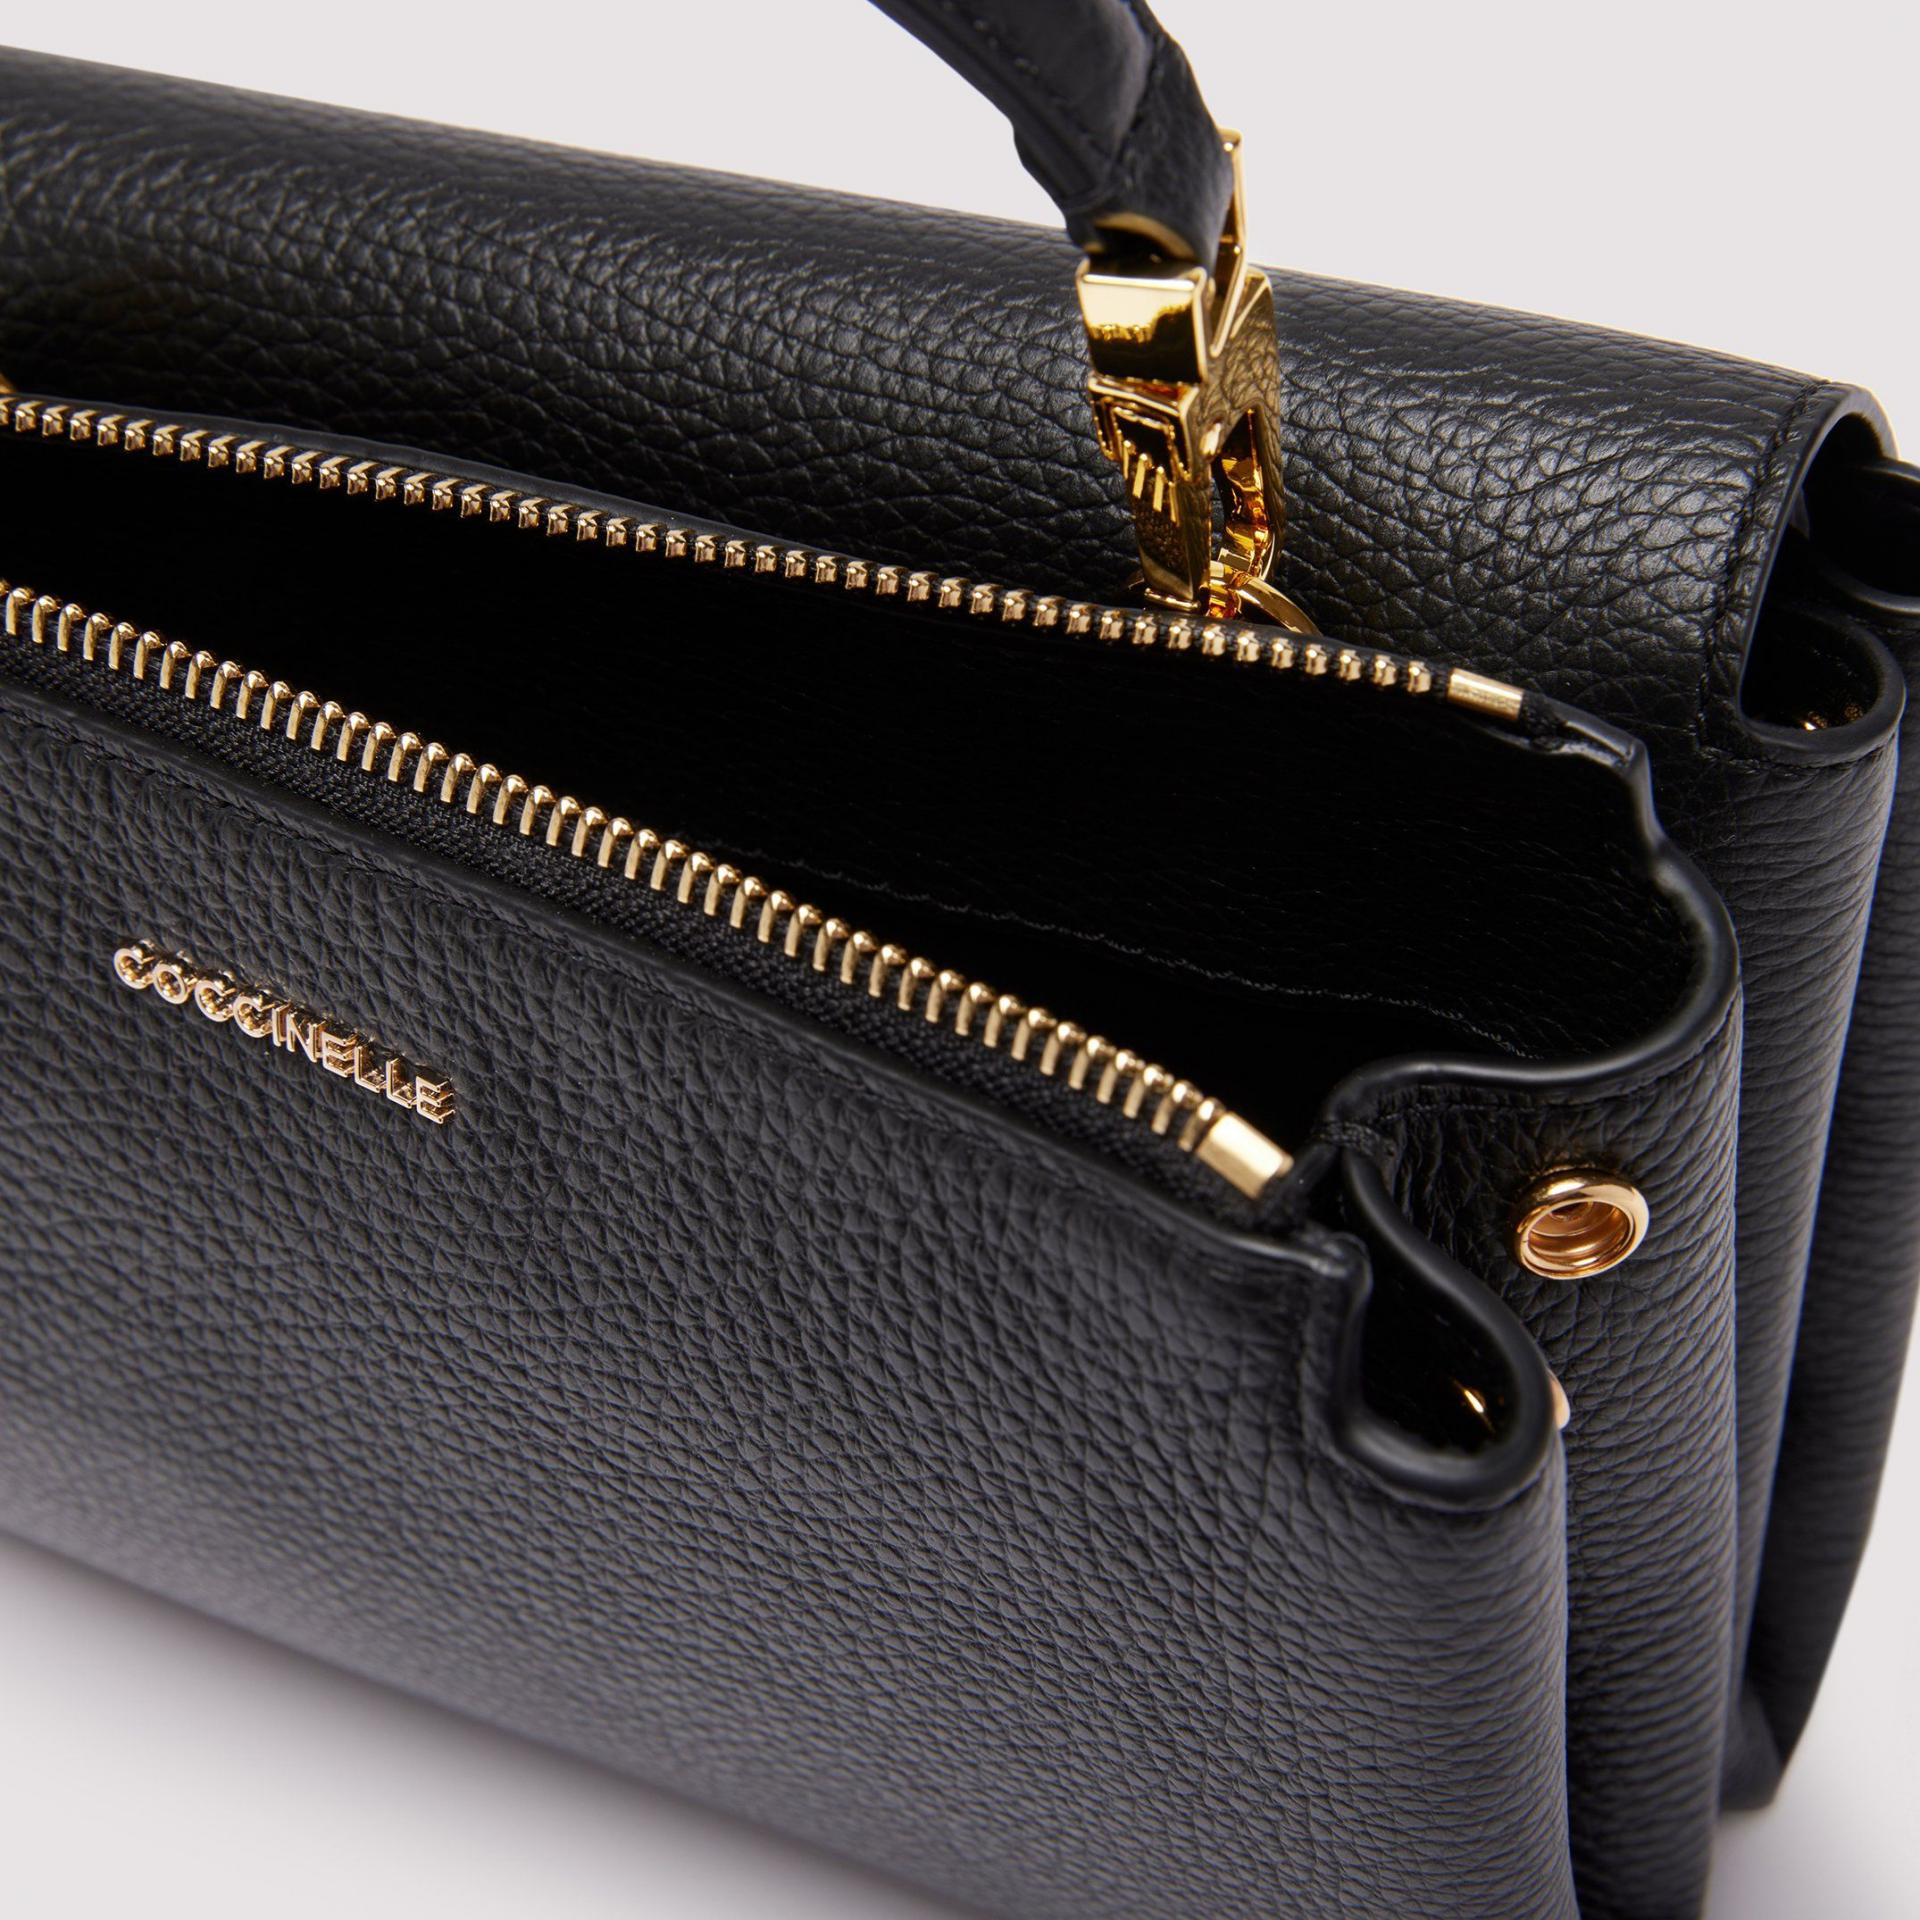 Coccinelle Bags ARLETTIS SIGNATURE Leder Handtasche - Variante: NOIR